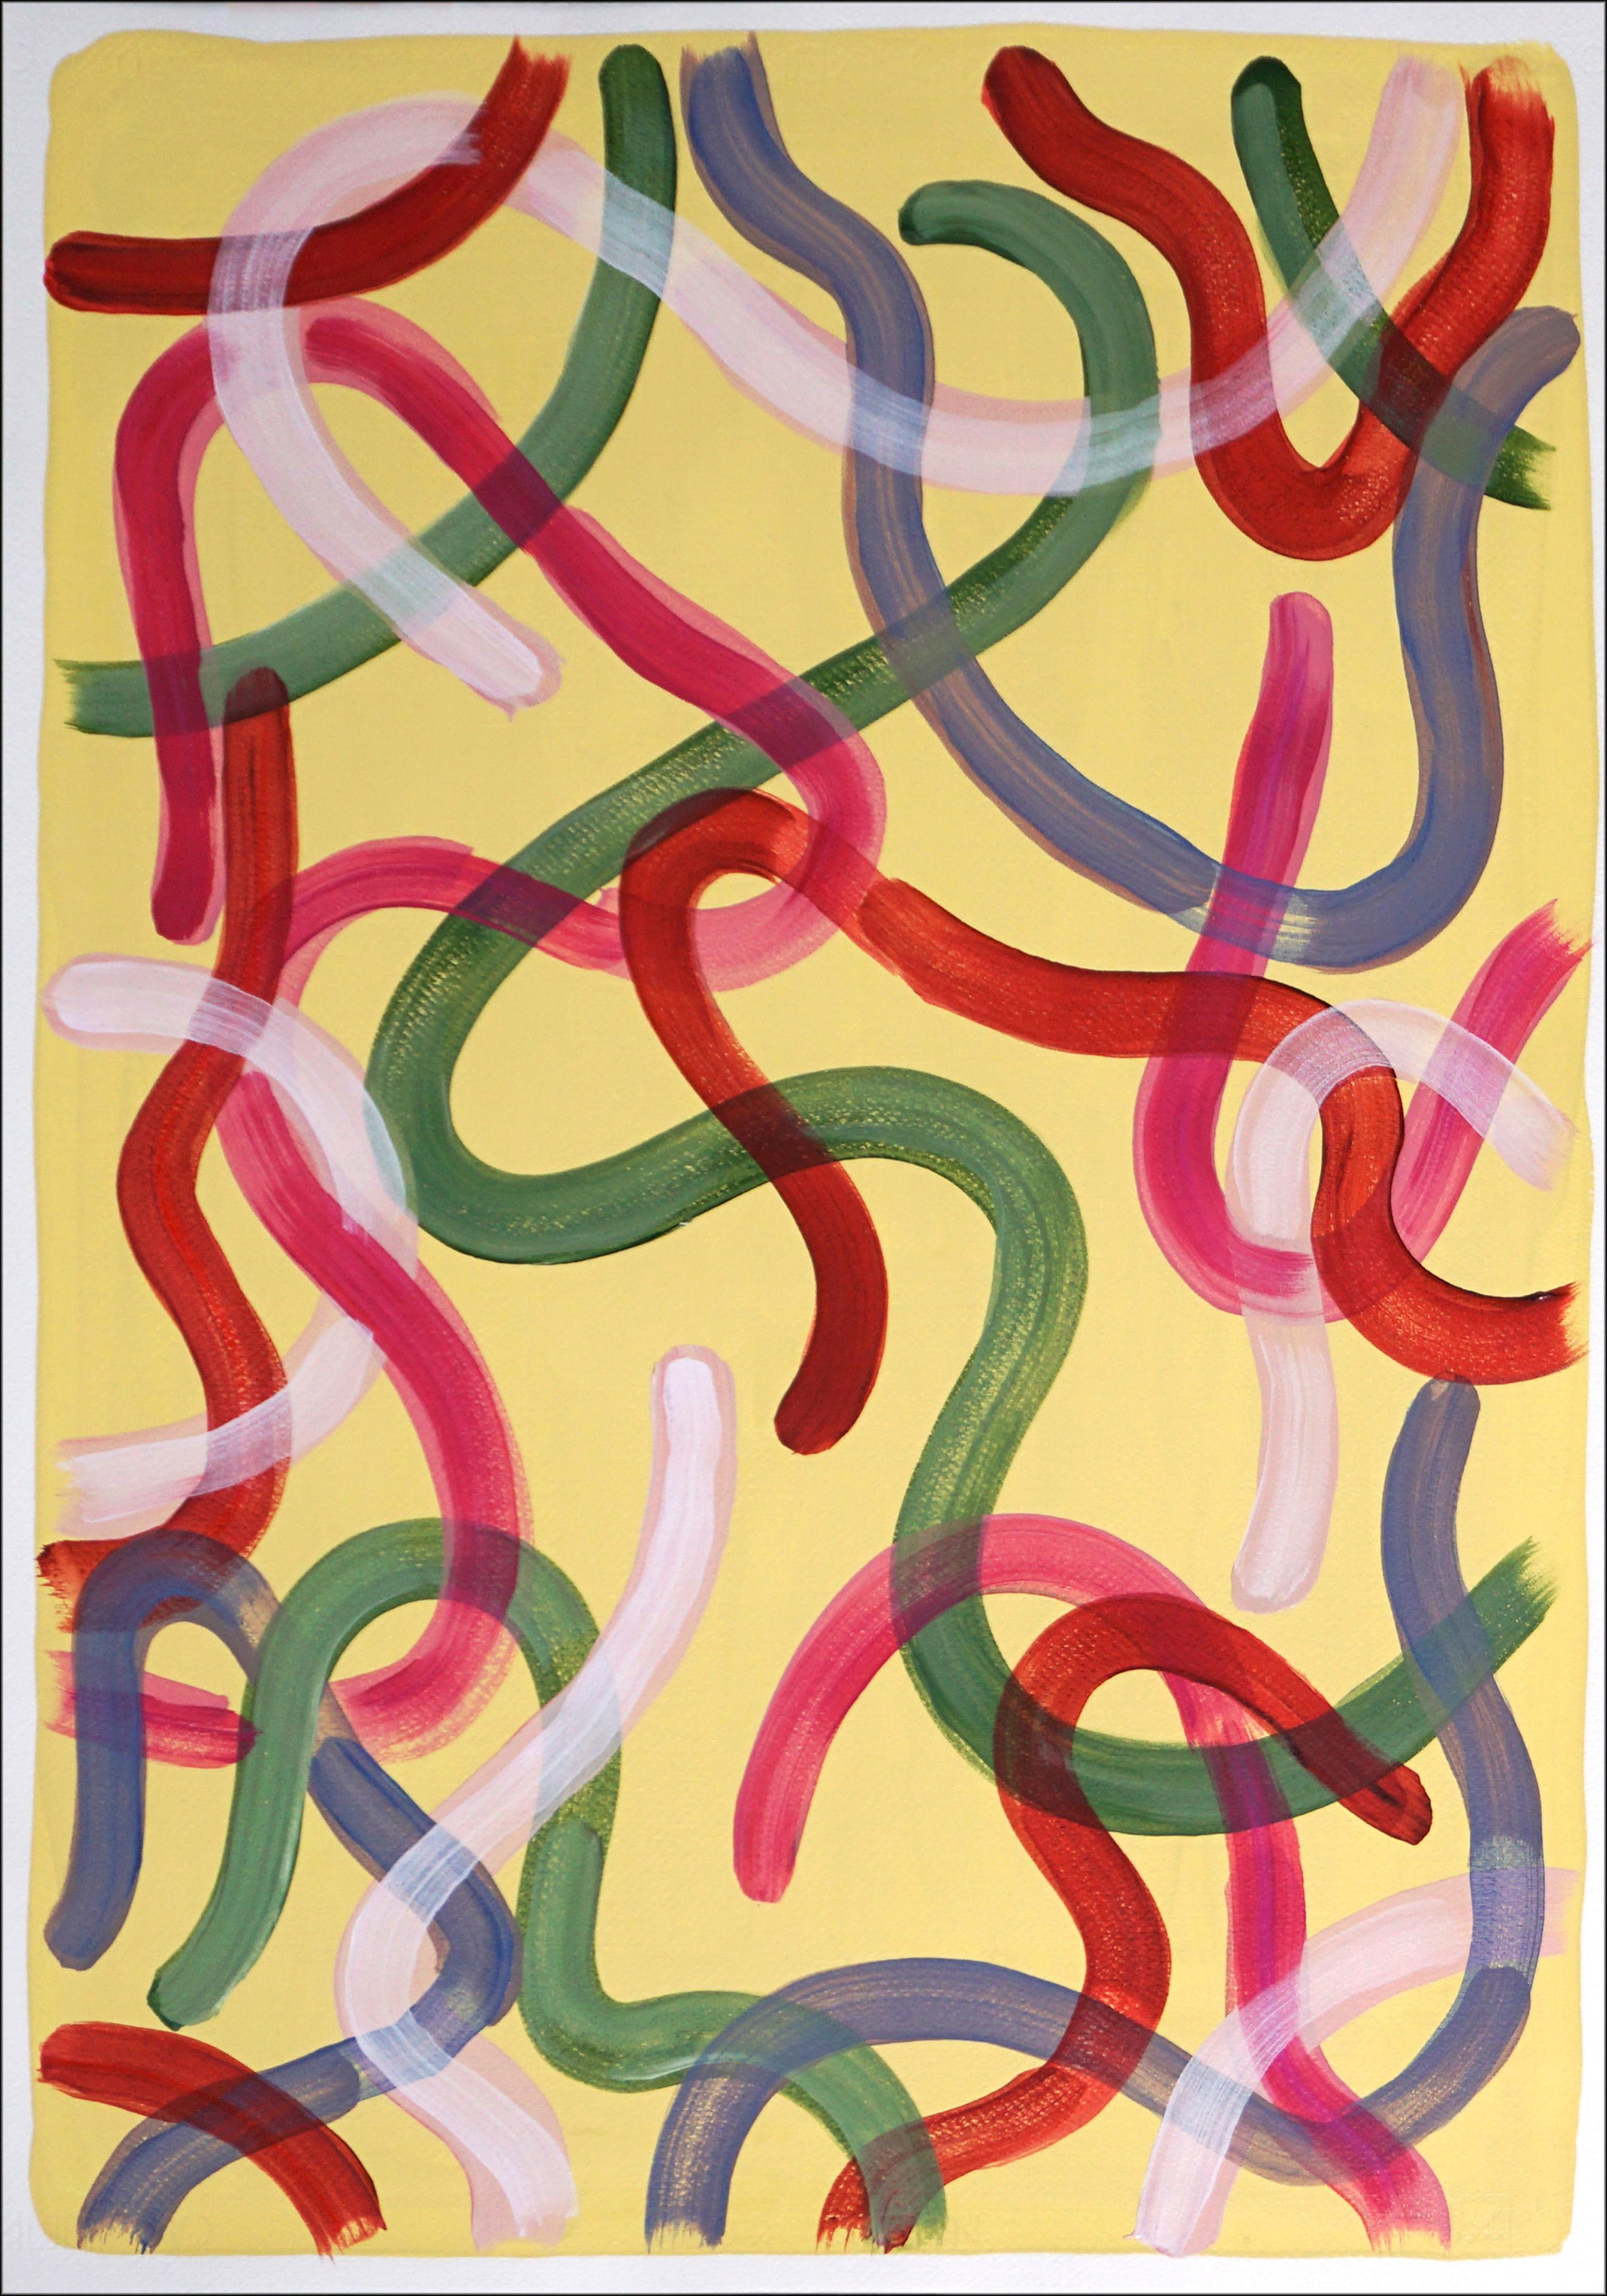 Vivid Gestures on Vanilla, Duo von organischen Pinselstrichen, Rot, Grün, Rosa, Urban (Abstrakter Expressionismus), Painting, von Natalia Roman